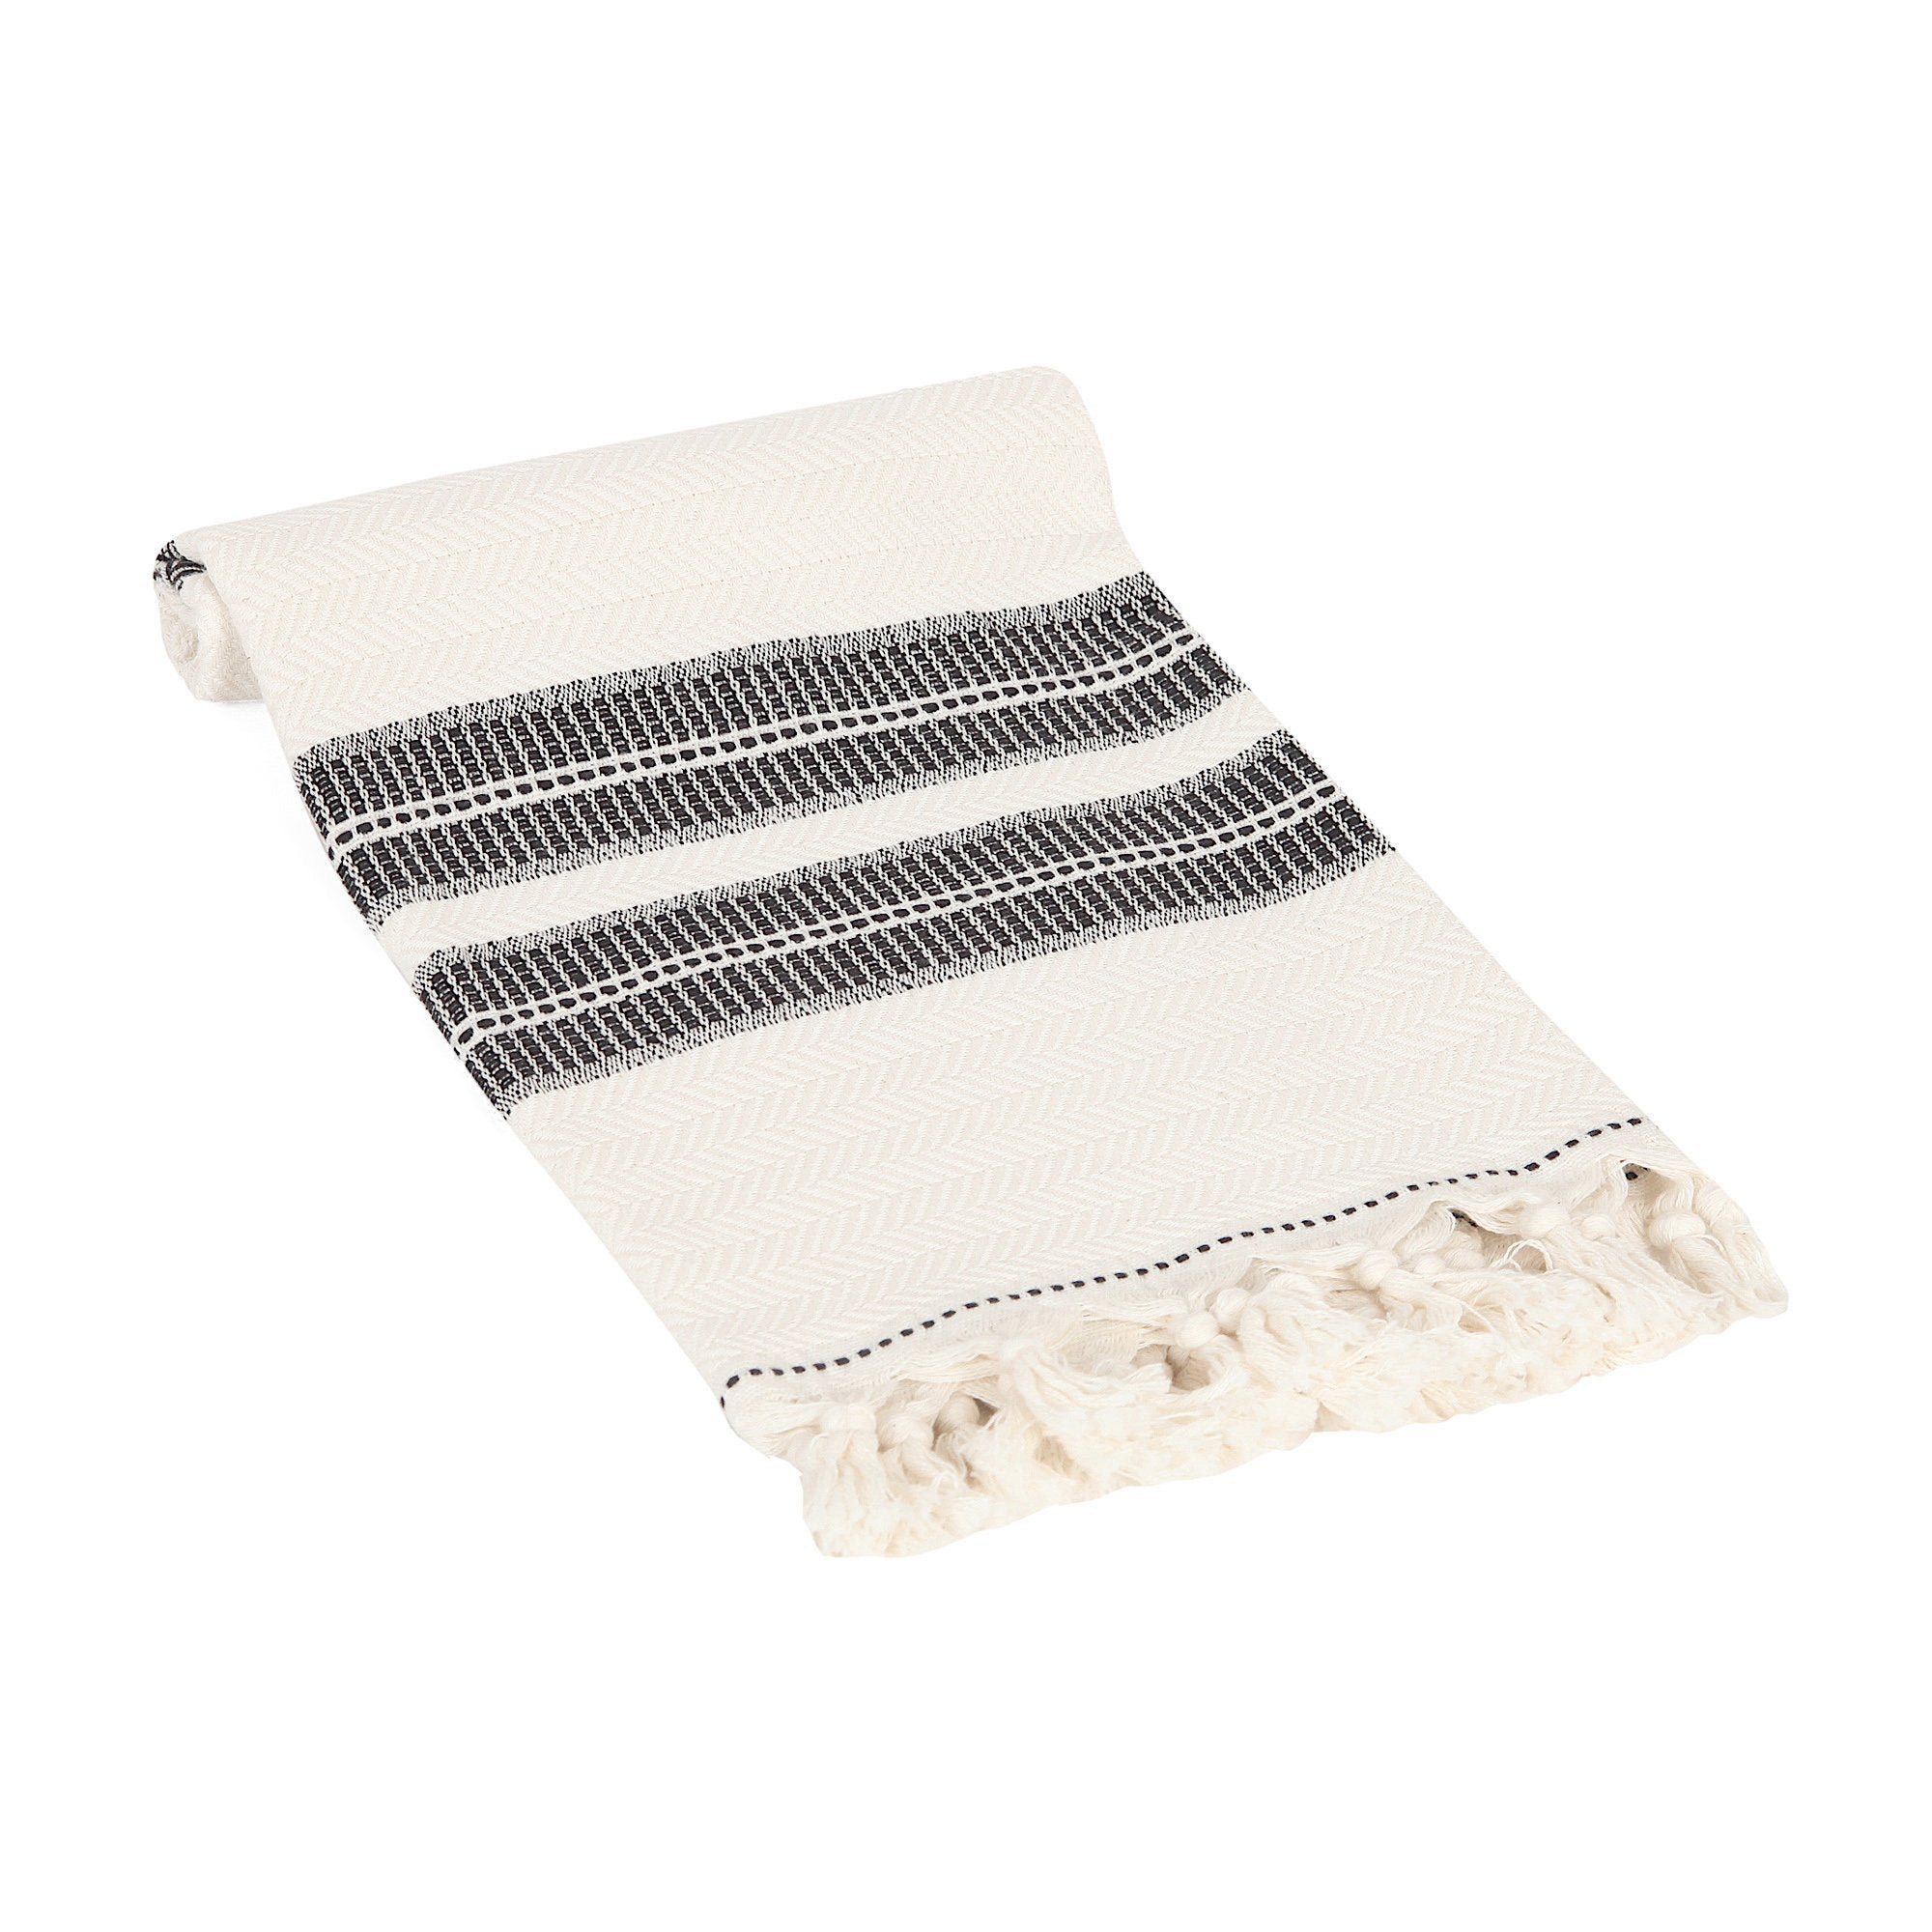 Hand-Woven Linen Turkish Hand Towel, Kitchen Towel, Guest Towel, Tea T –  Dervis Natural Textile